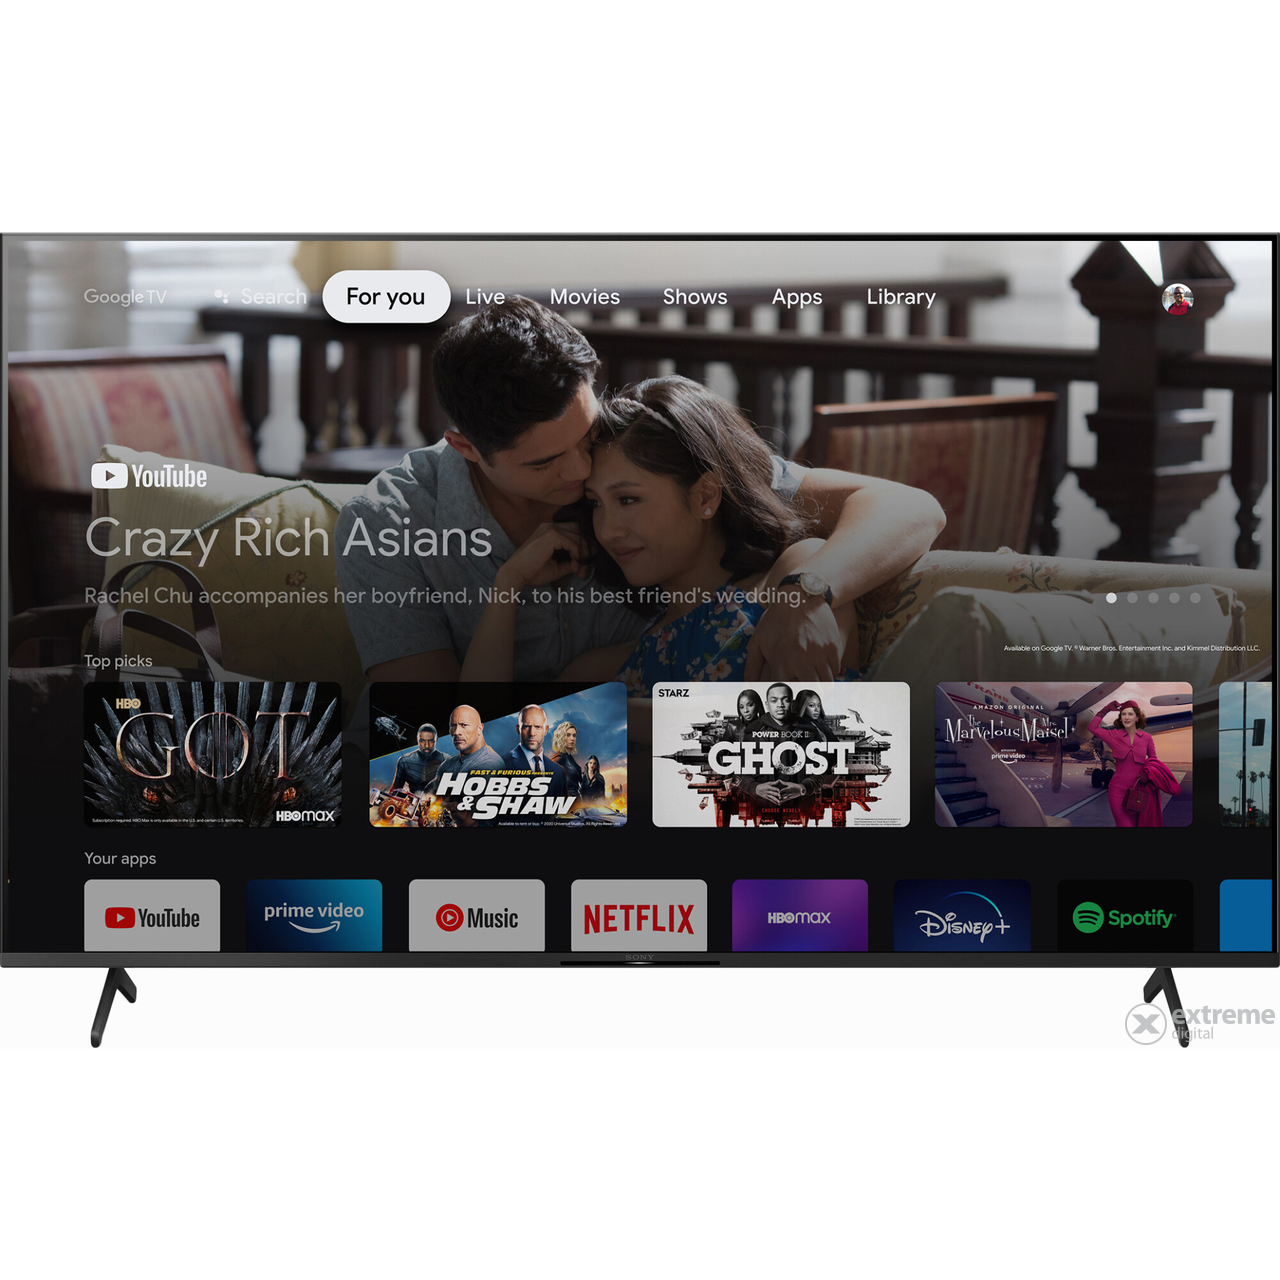 Sony KD65X85JAEP Smart LED Televize, 164 cm, 4K Ultra HD, Google TV